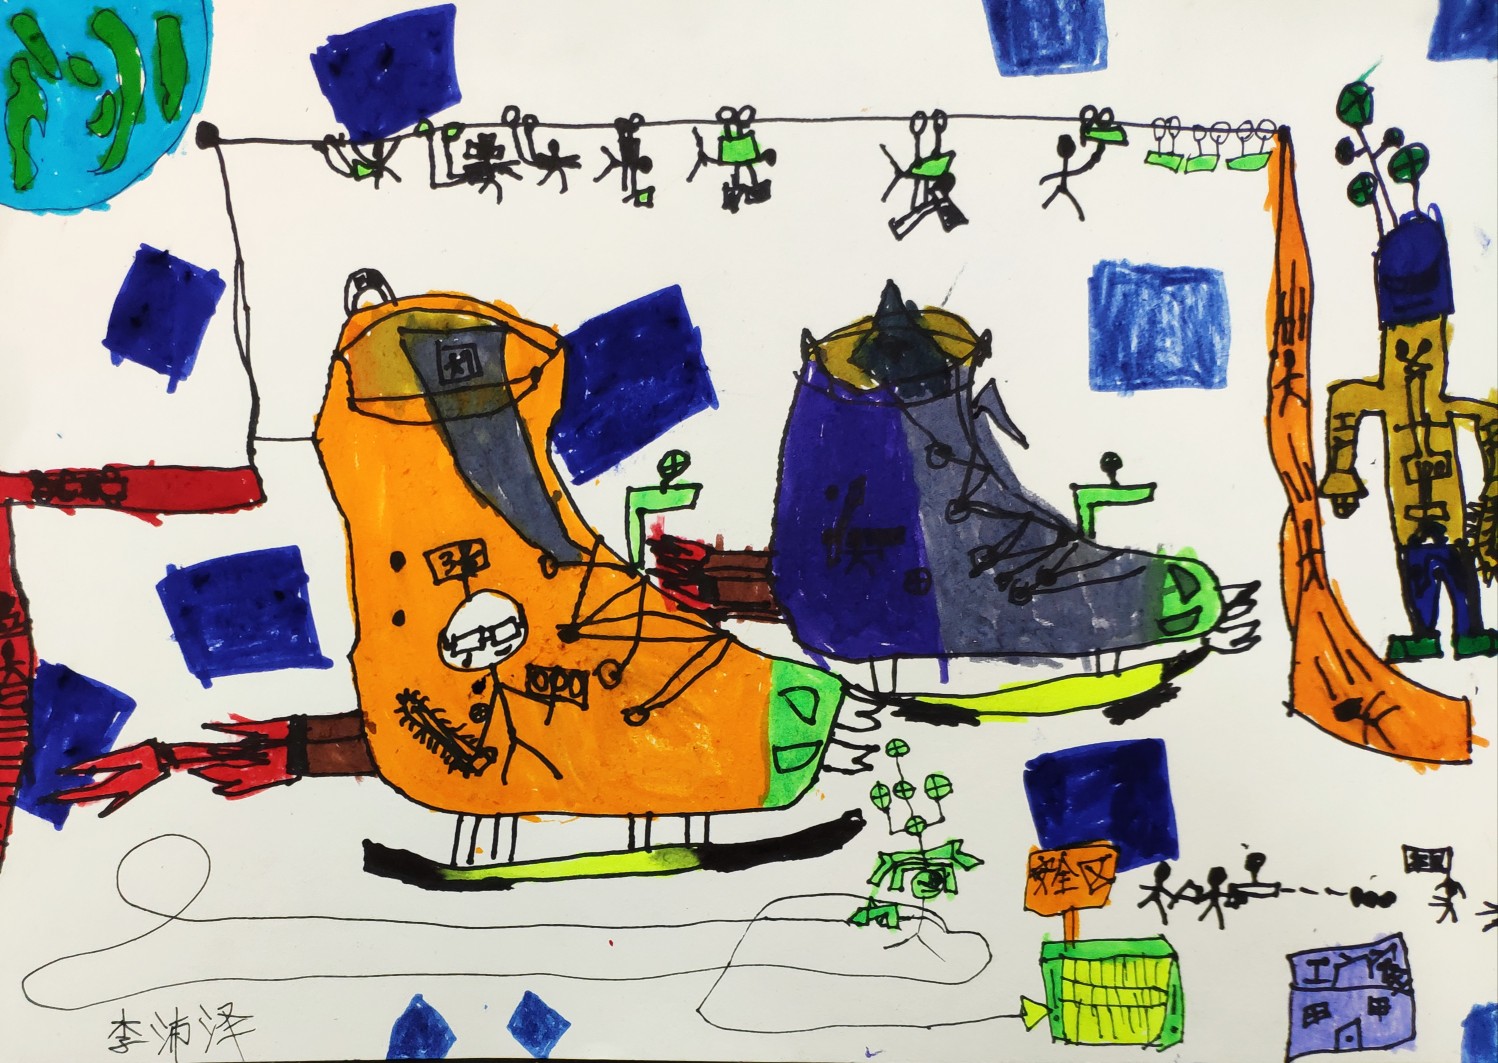 鞋子工厂 创意儿童画 想象画